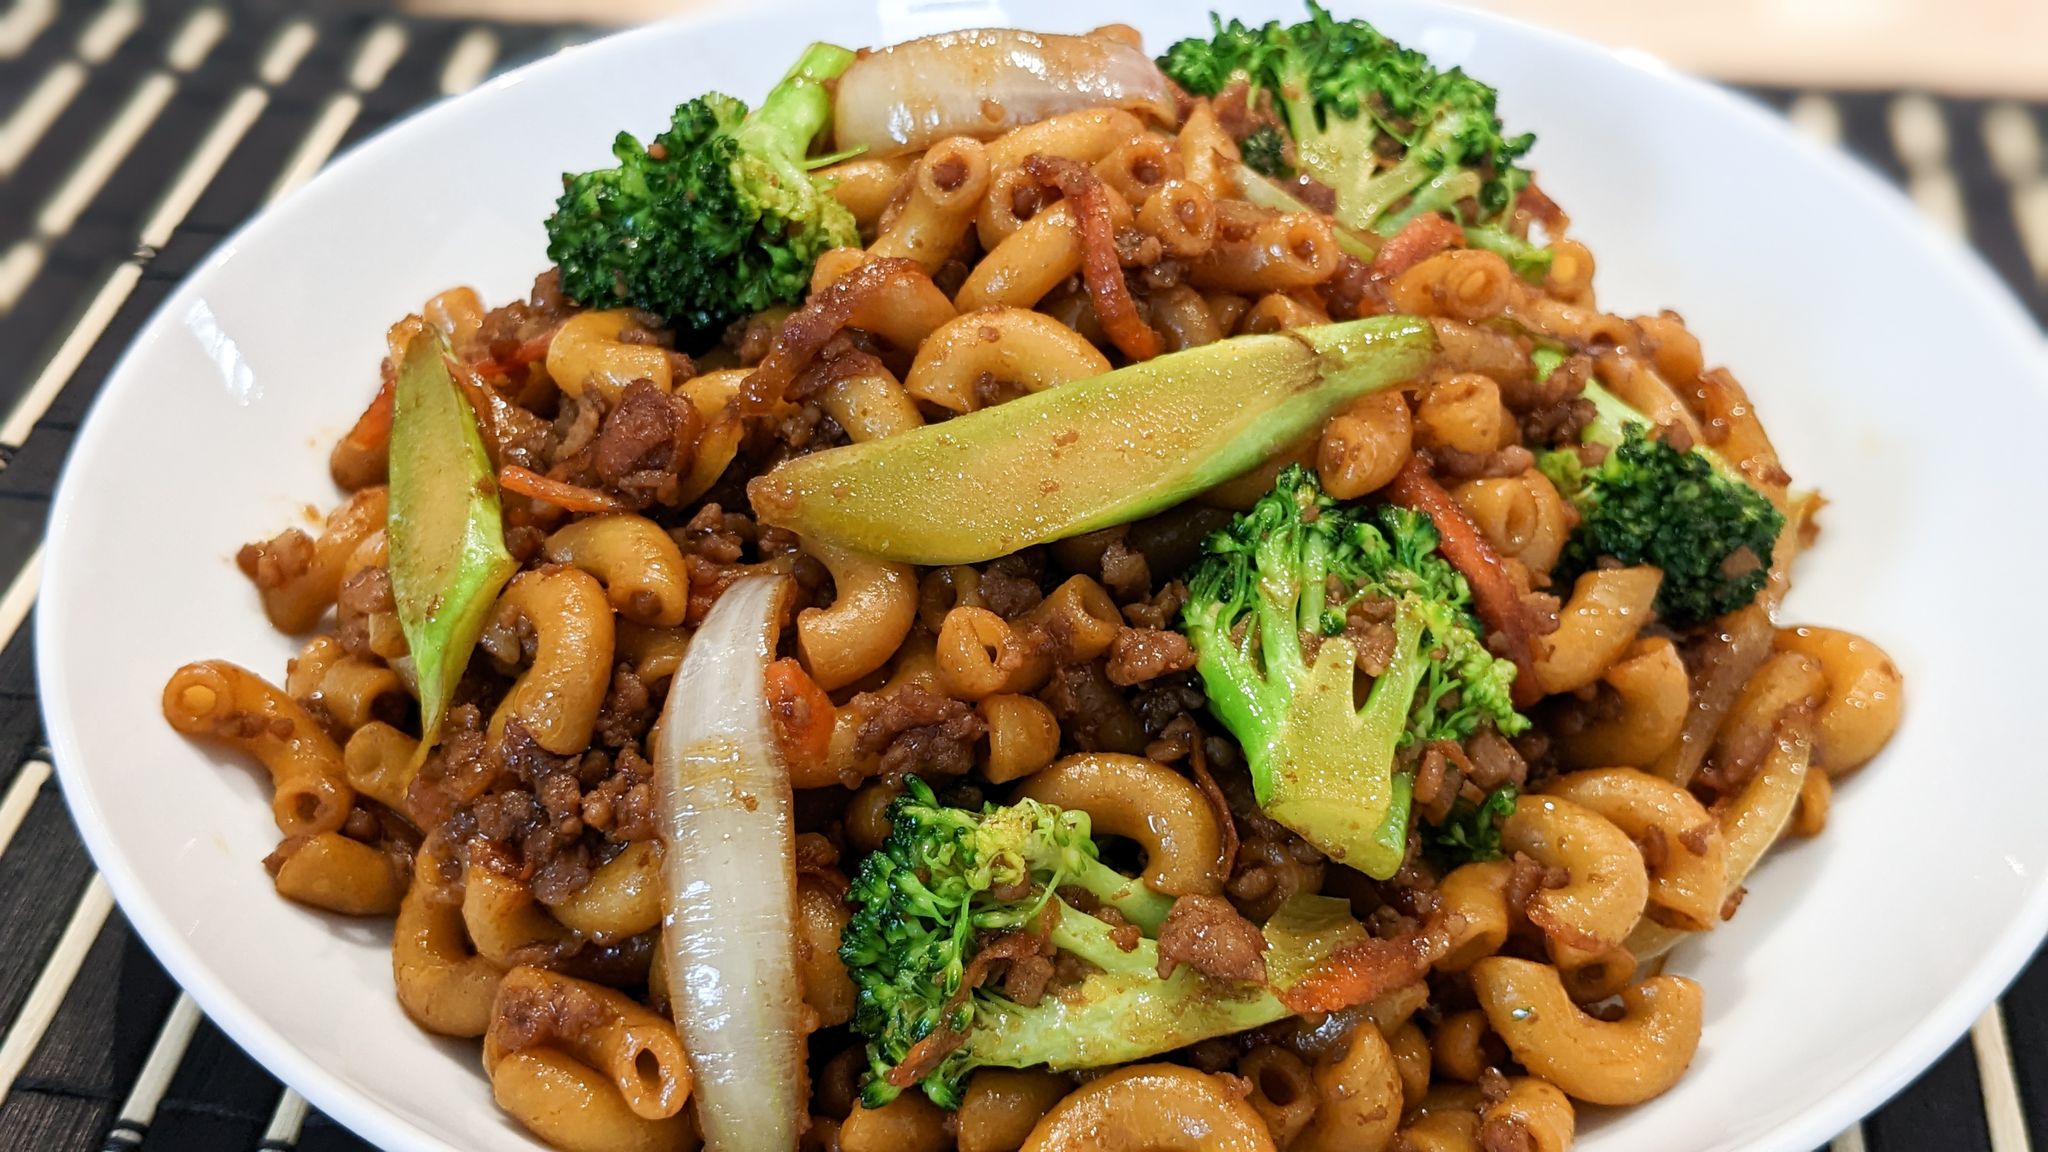 Recette de macaroni chinois (le meilleur) - Hop dans le wok